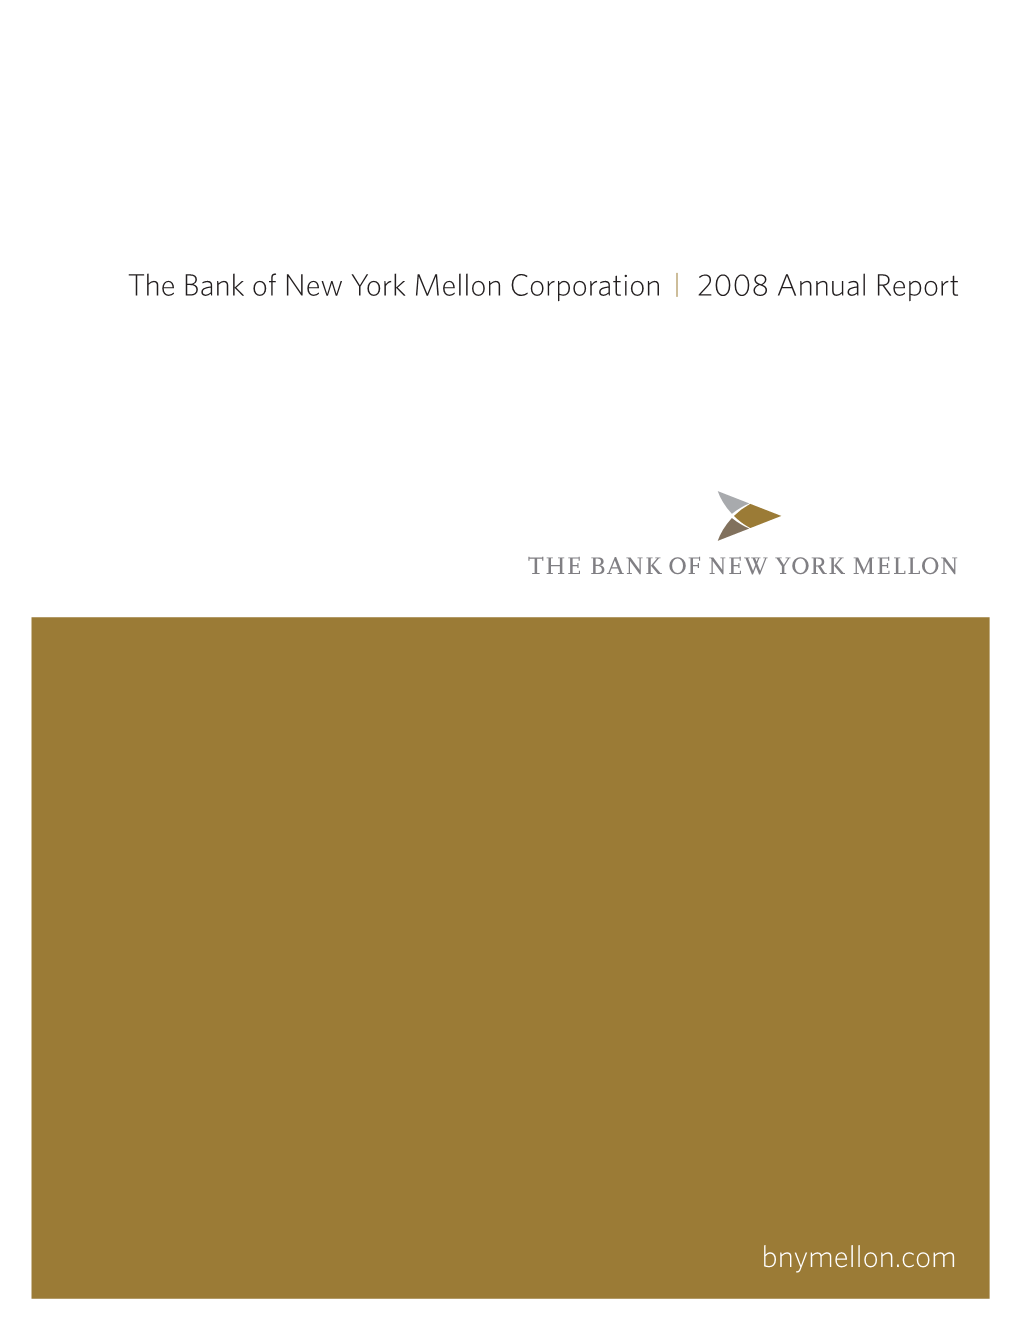 BNY Mellon 2008 Annual Report